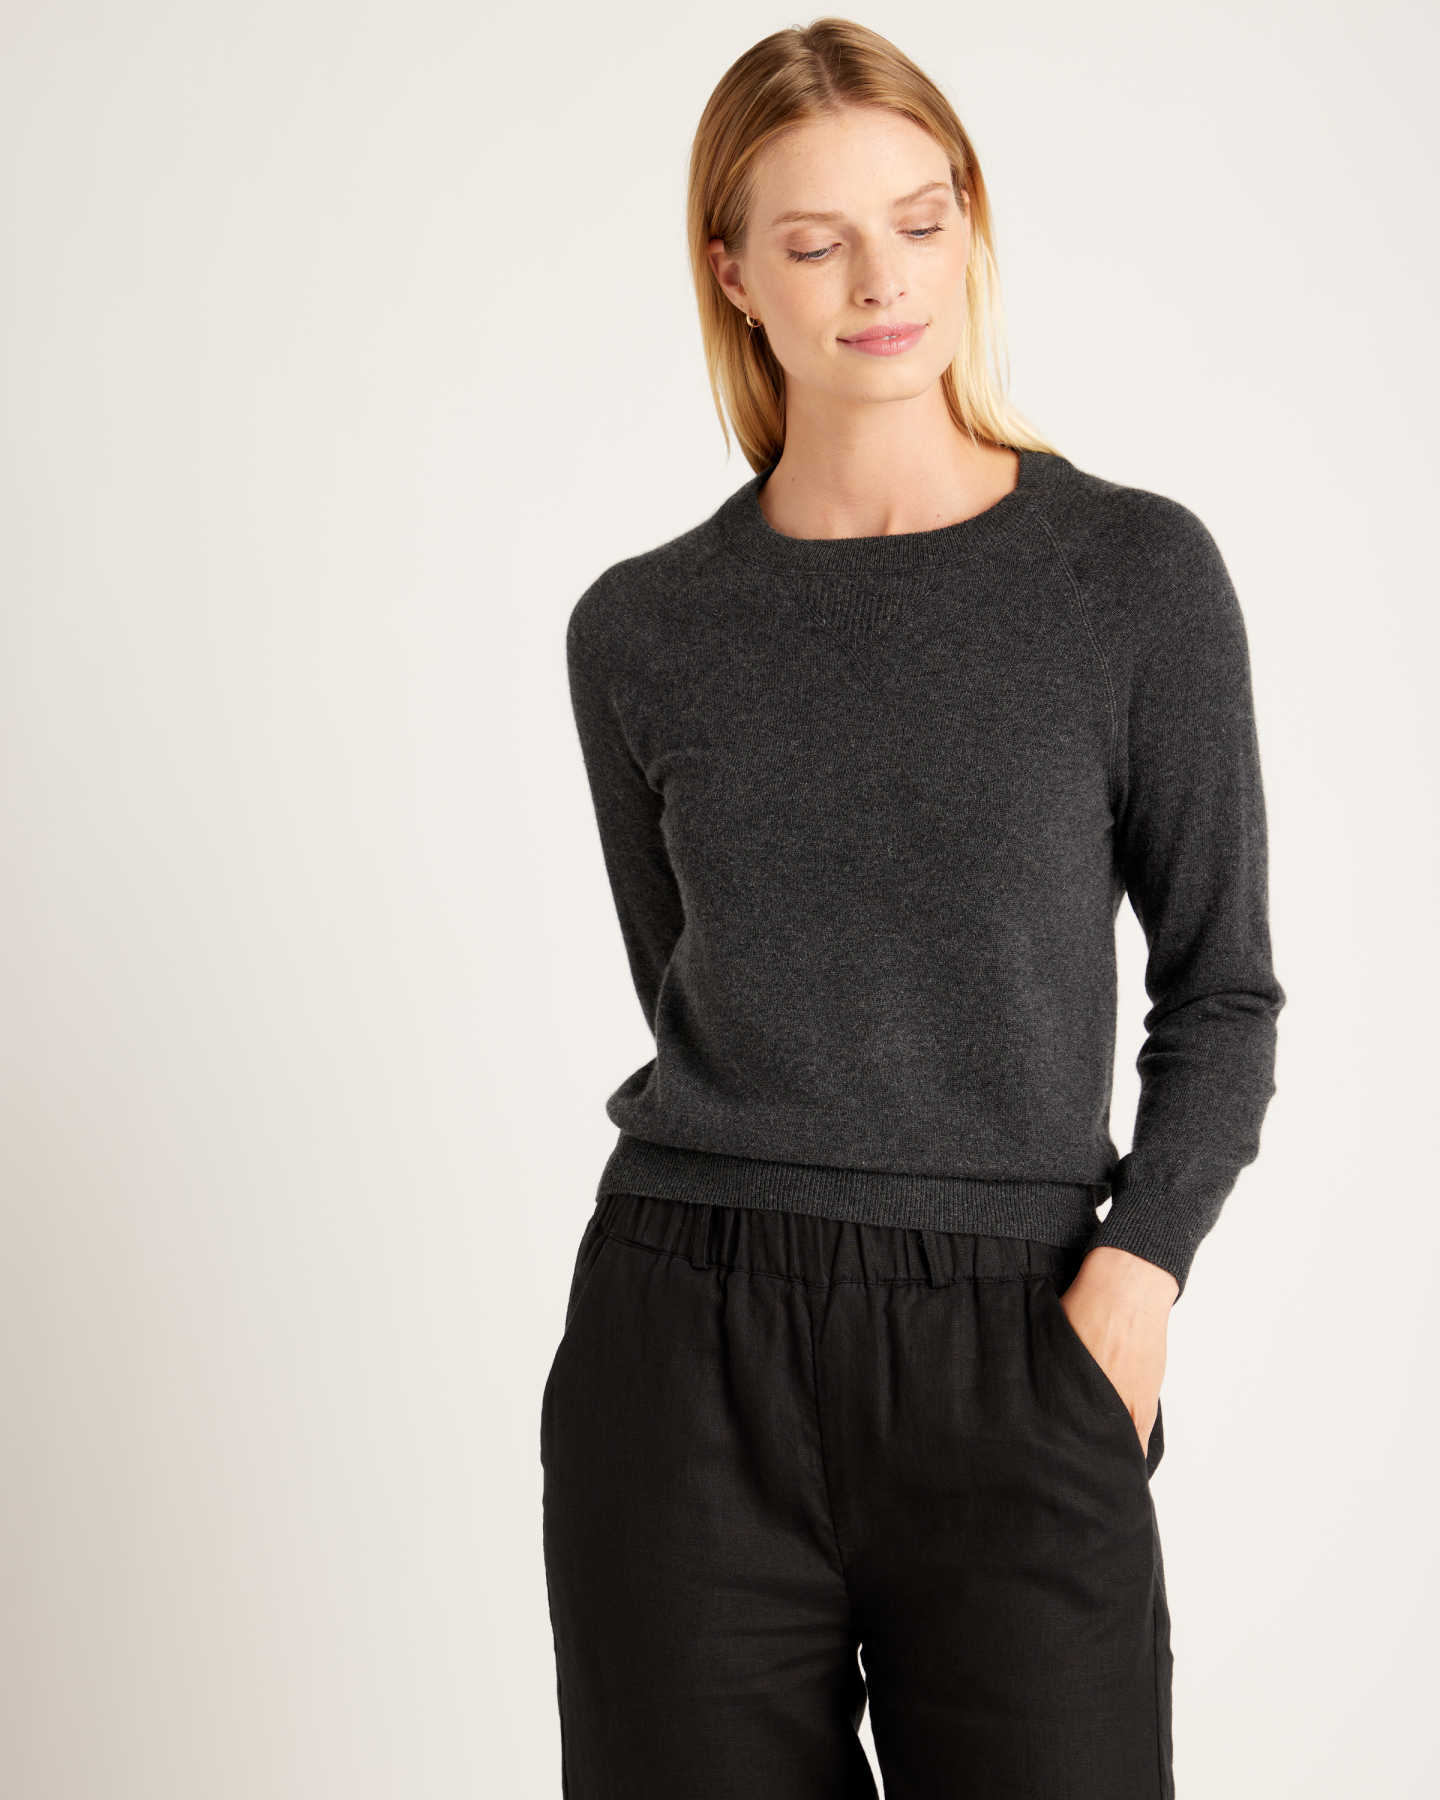 Luxe Baby Cashmere Sweatshirt - Charcoal - 0